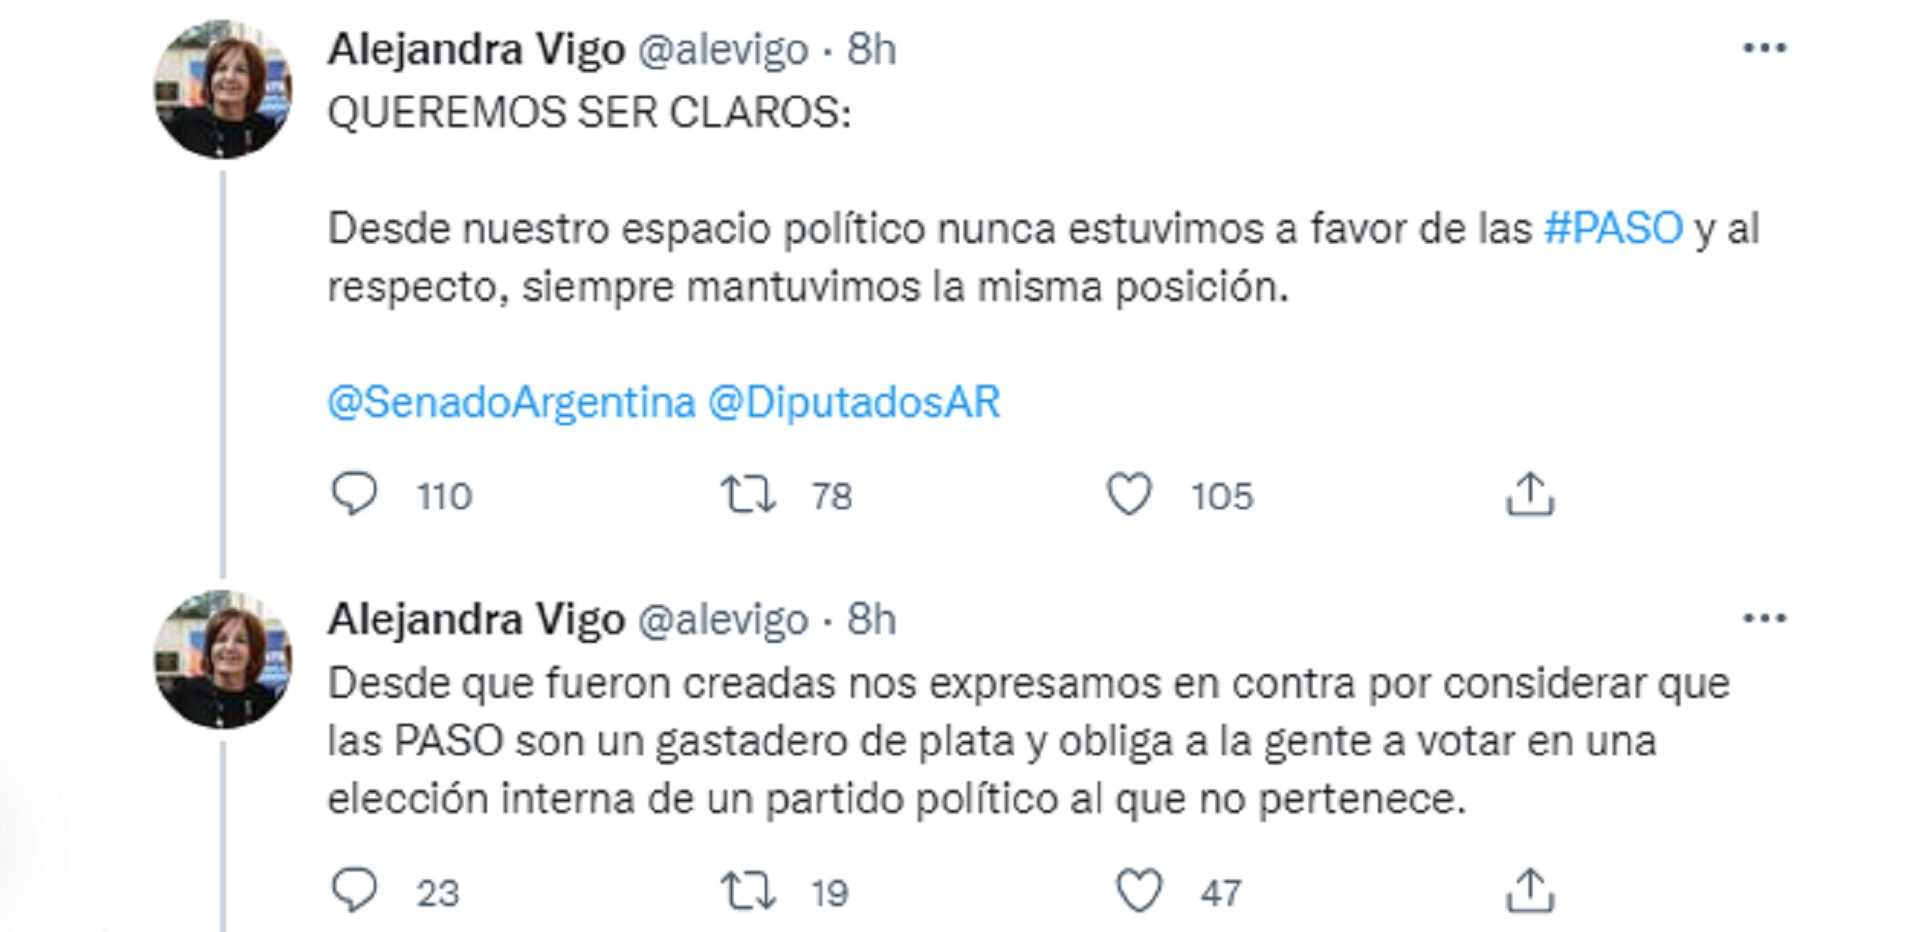 La senadora Alejandra Vigo criticó las PASO